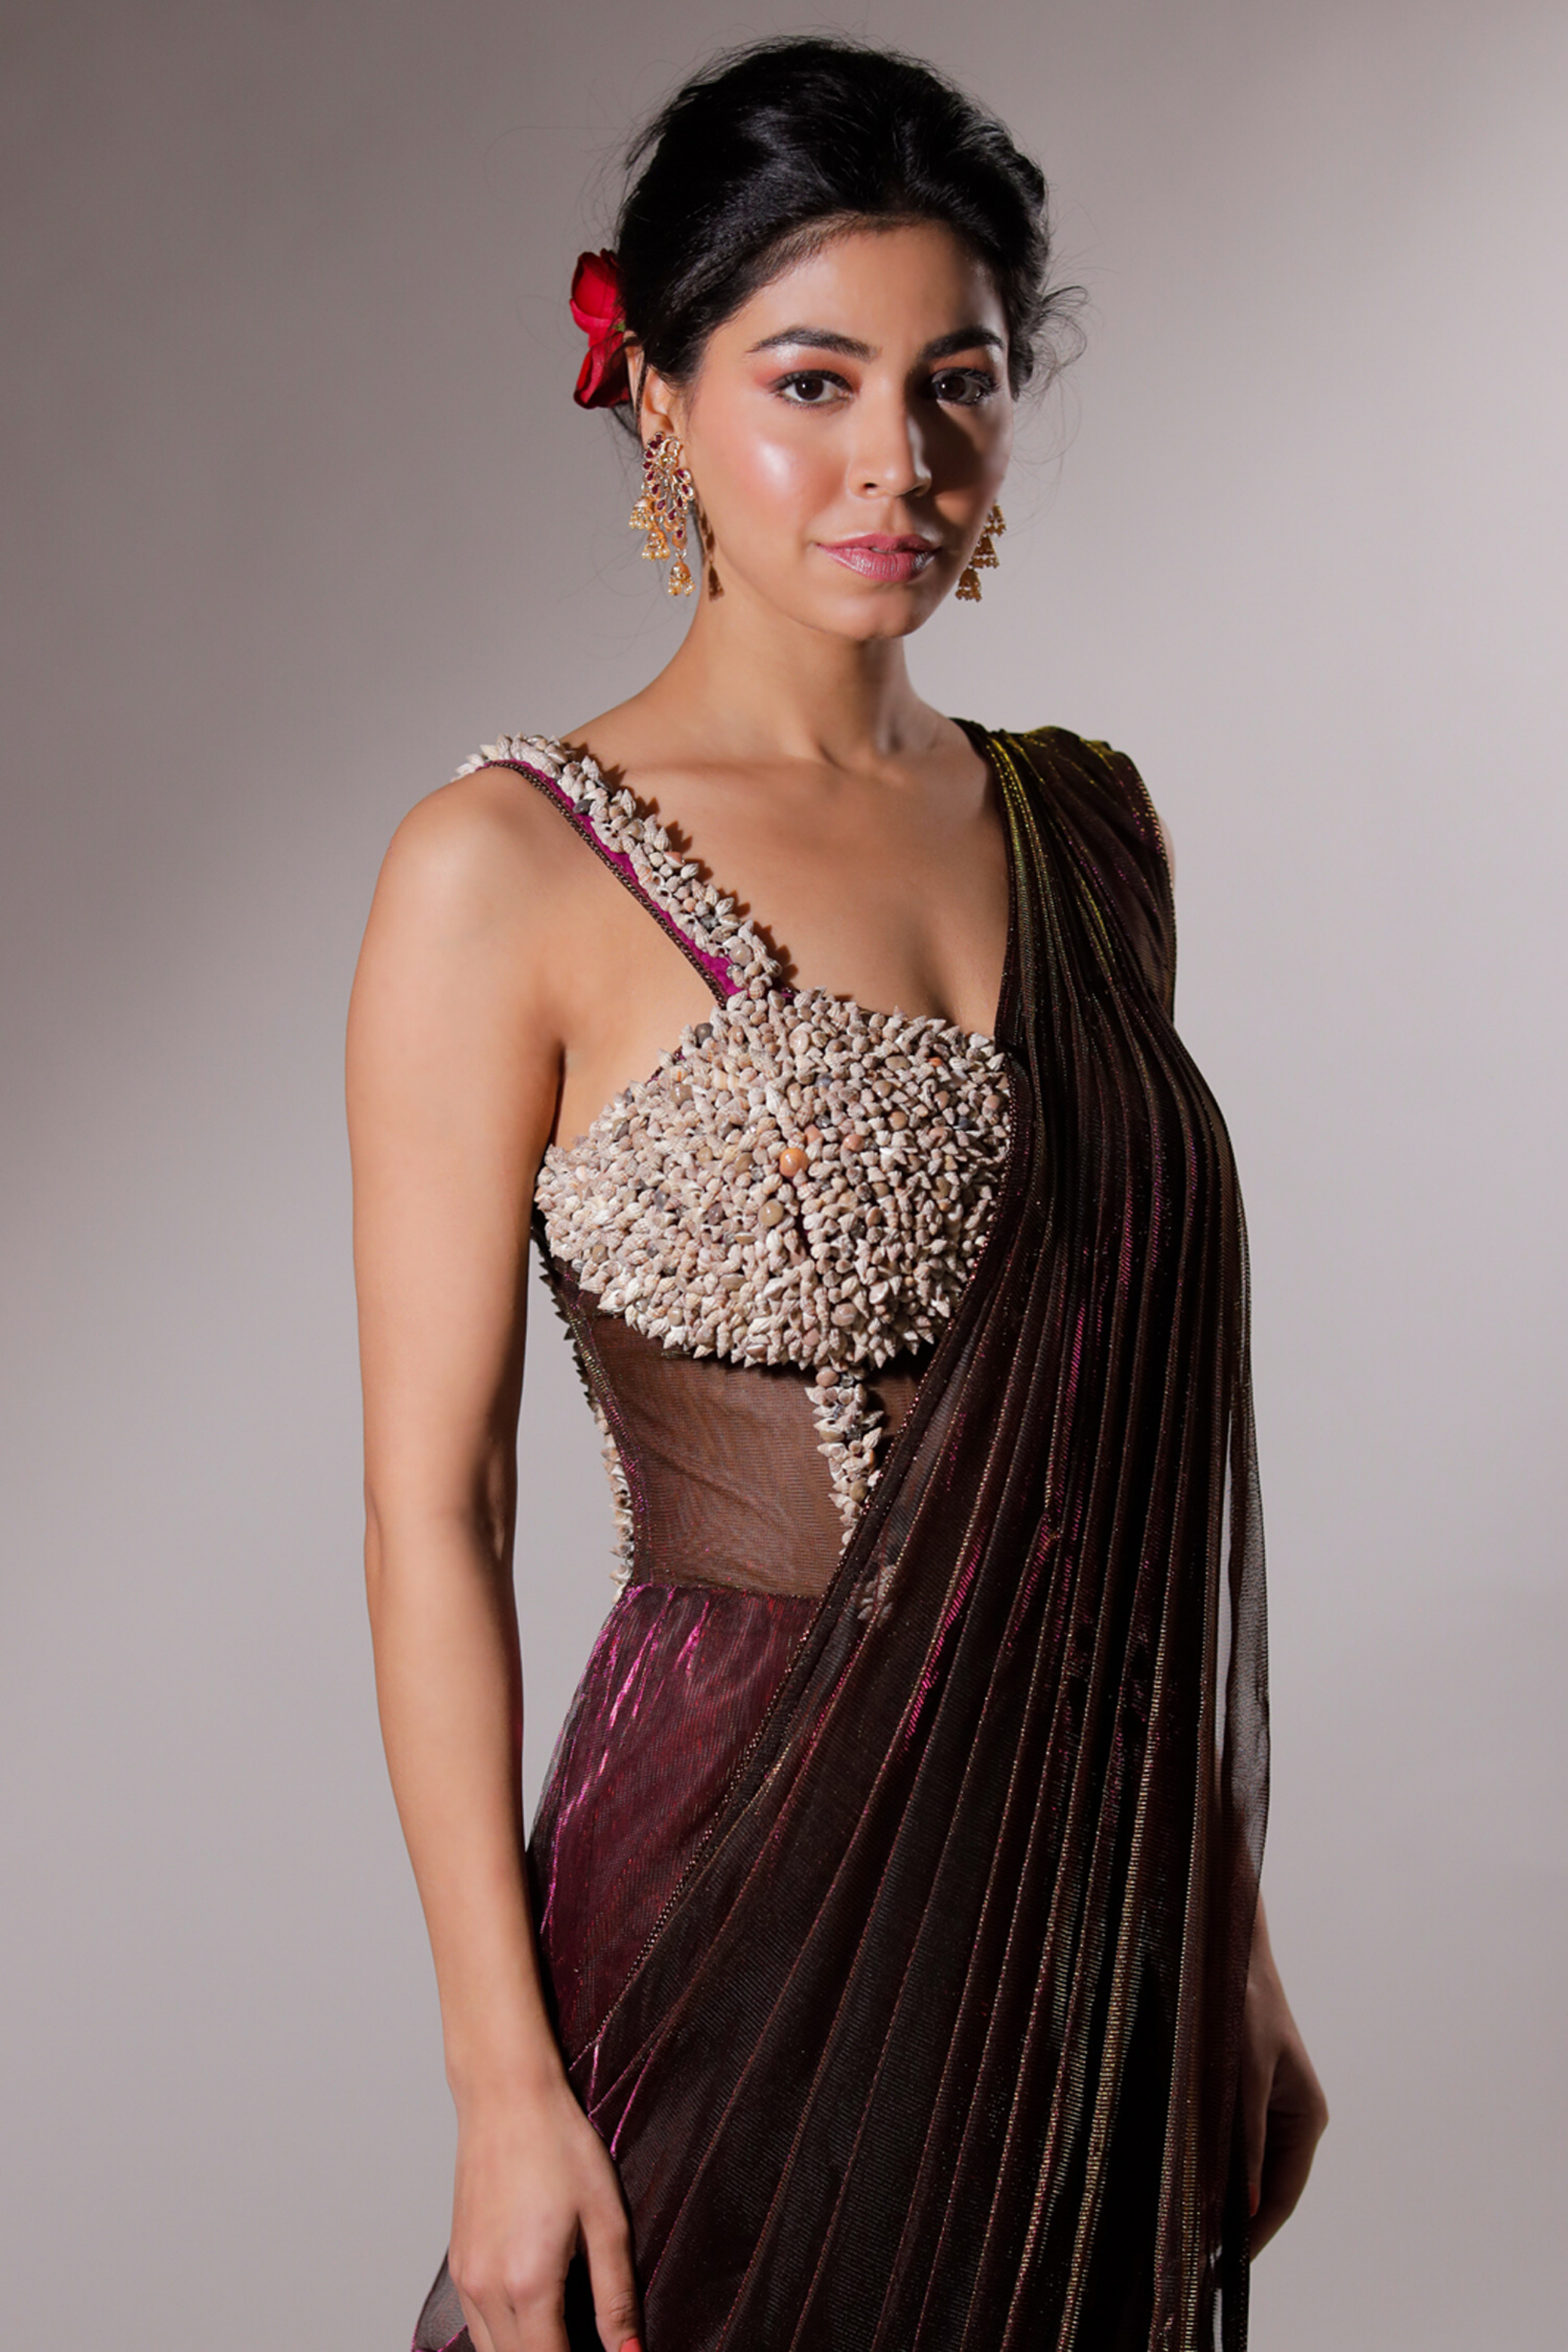 Net Sari Gown